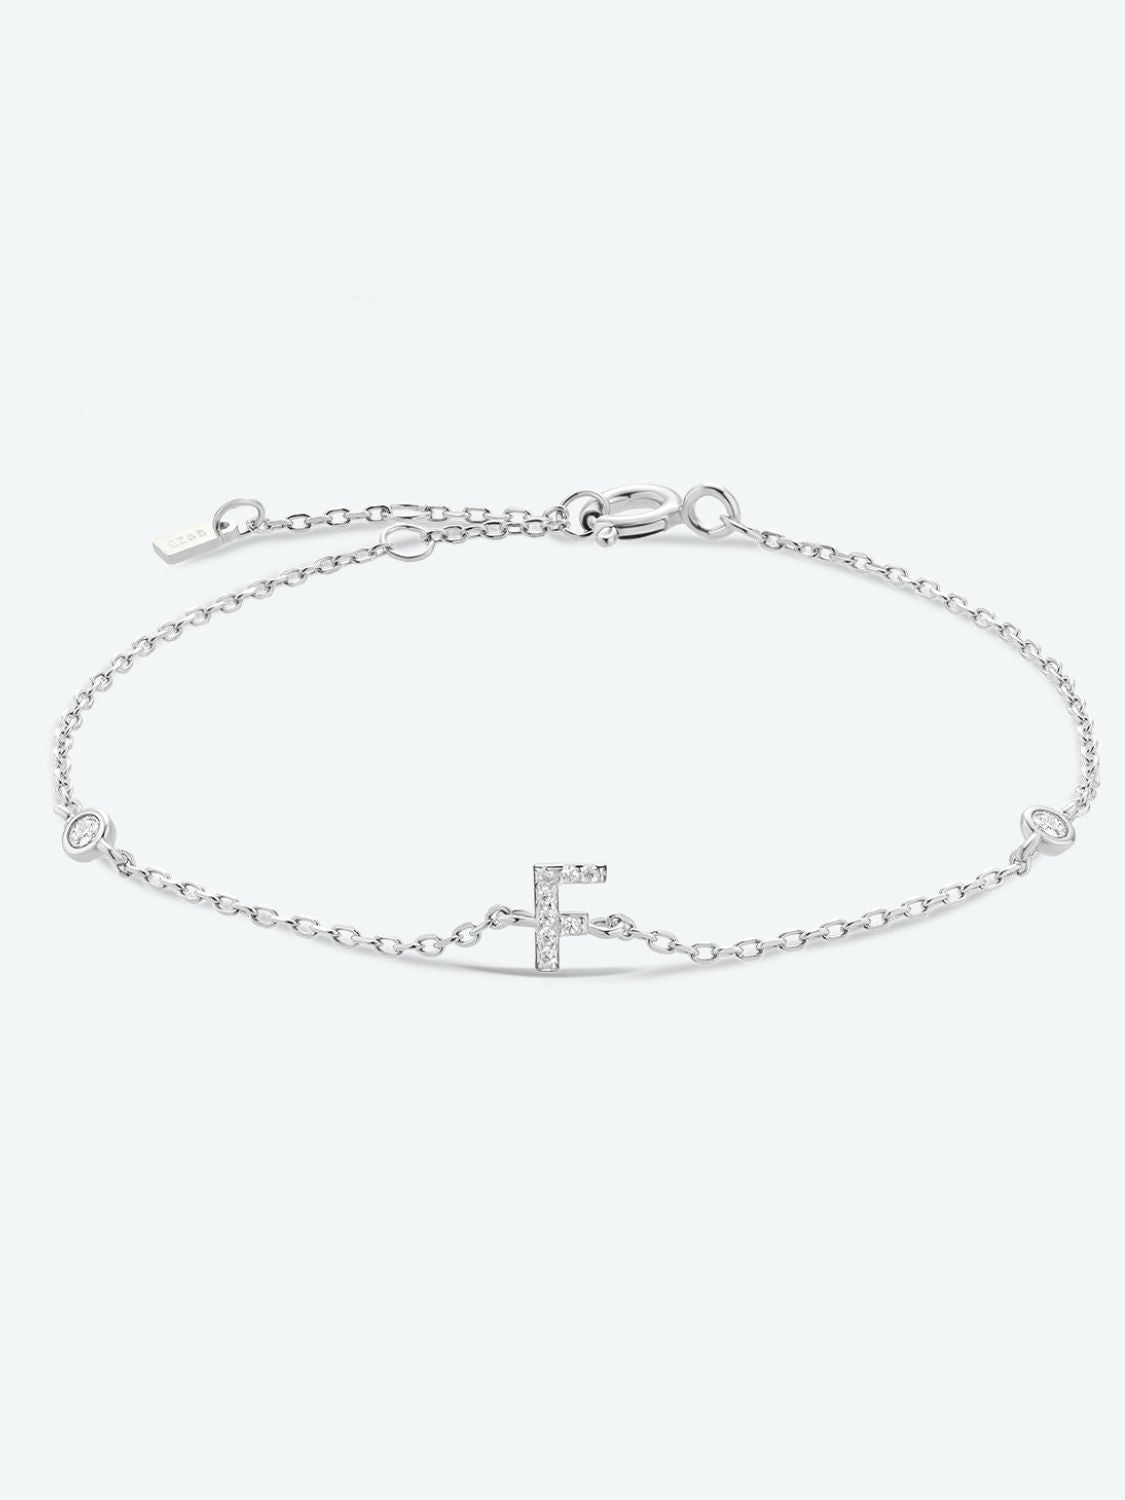 A To F Zircon 925 Sterling Silver Bracelet - F-Silver / One Size - Women’s Jewelry - Bracelets - 34 - 2024